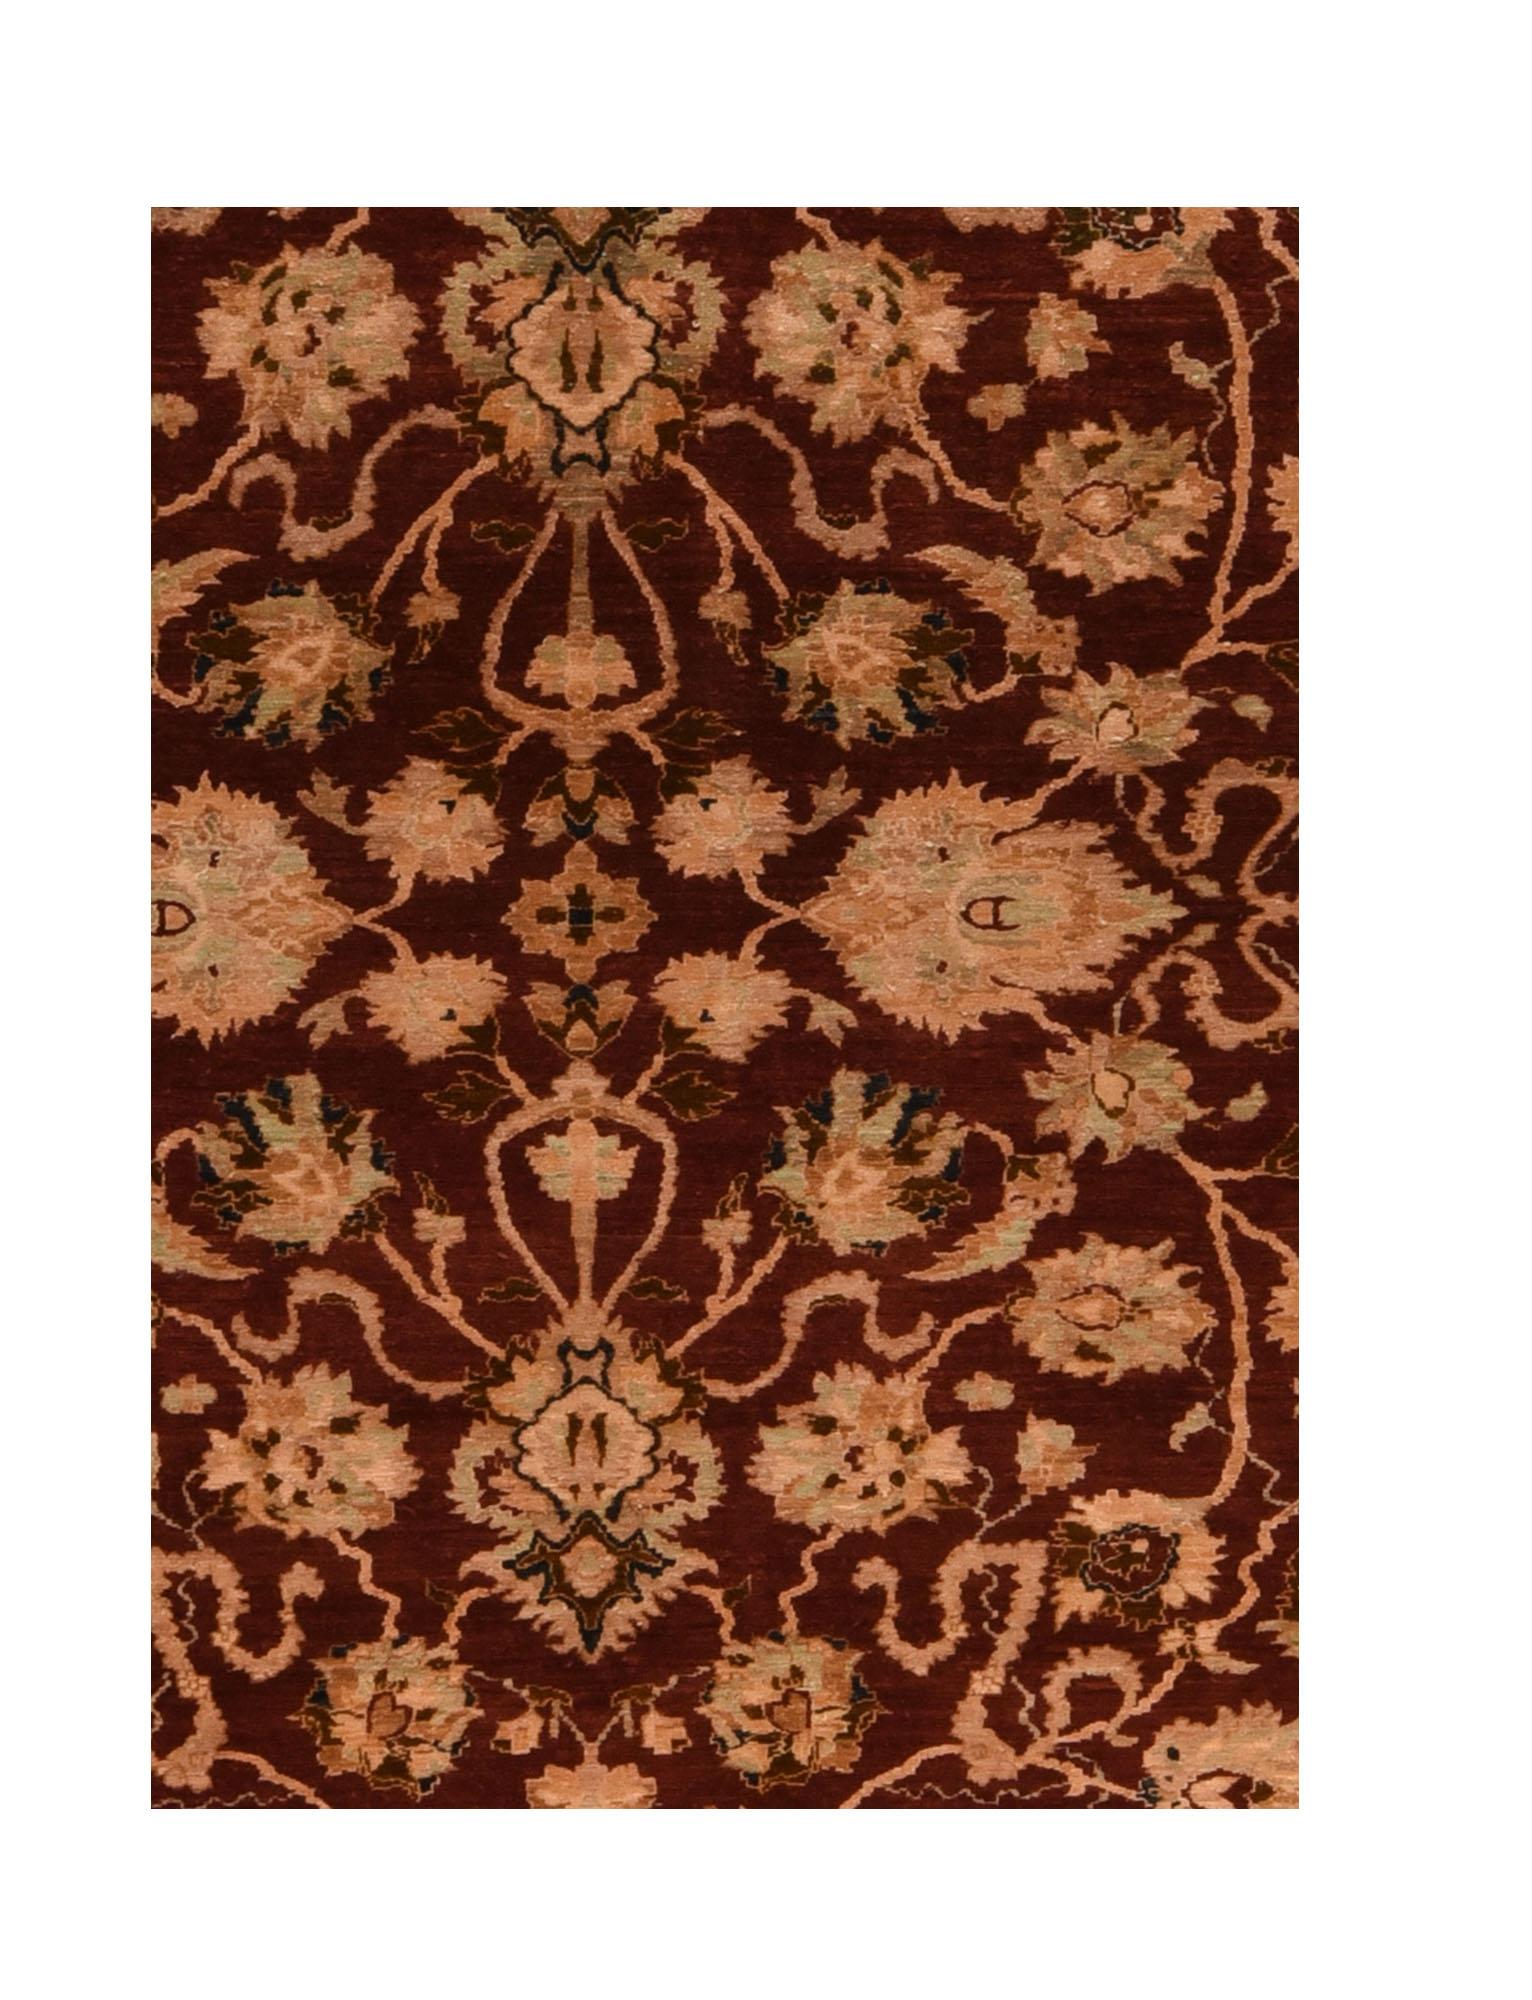 Ein pakistanischer Teppich (Pak Persian Rug oder Pakistani carpet) ist eine Art handgefertigter Bodenbelag, der traditionell in Pakistan hergestellt wird.

Chobi-Teppiche, die auch als Ziegler, Oushak oder Peshawar bezeichnet werden, bestehen aus